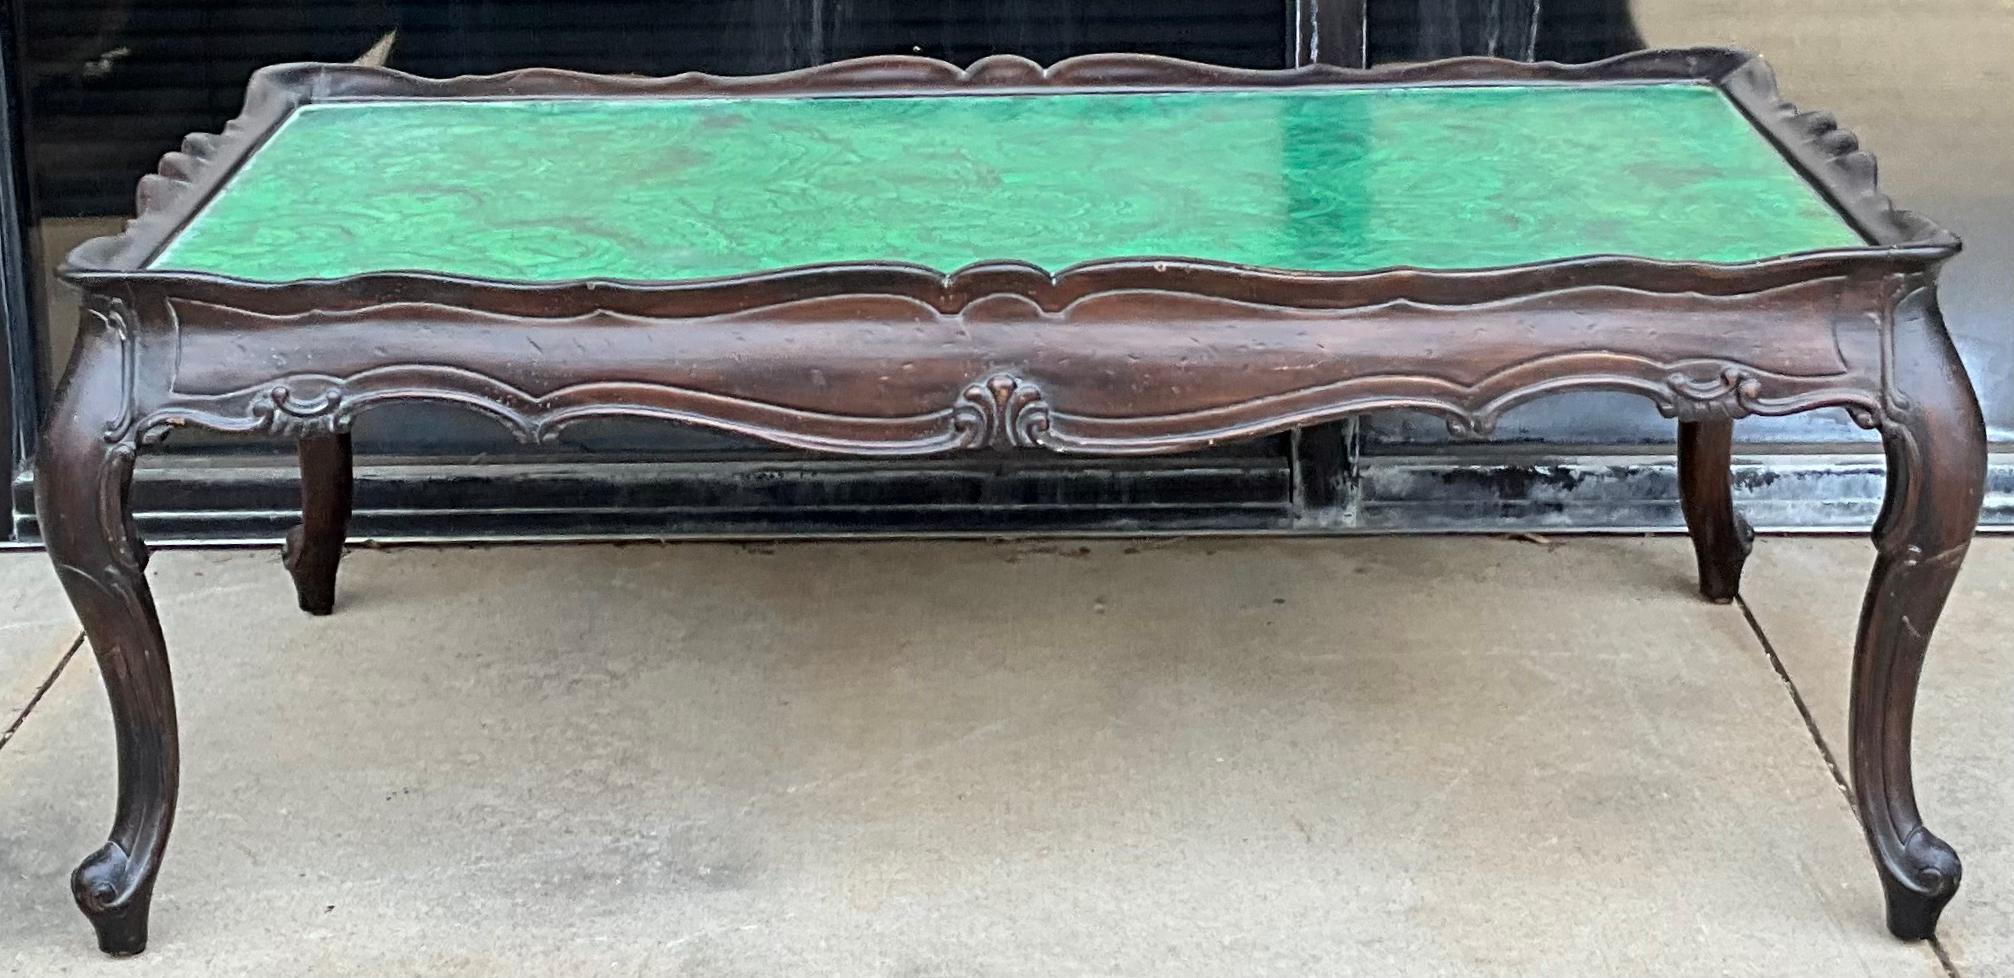 Il s'agit d'une table basse italienne sculptée en fausse malachite peinte, datant de l'époque Hollywood Regency. La base est fortement sculptée avec une finition presque ébonisée ou espresso. Le dessus en faux malachite peint parle de lui-même